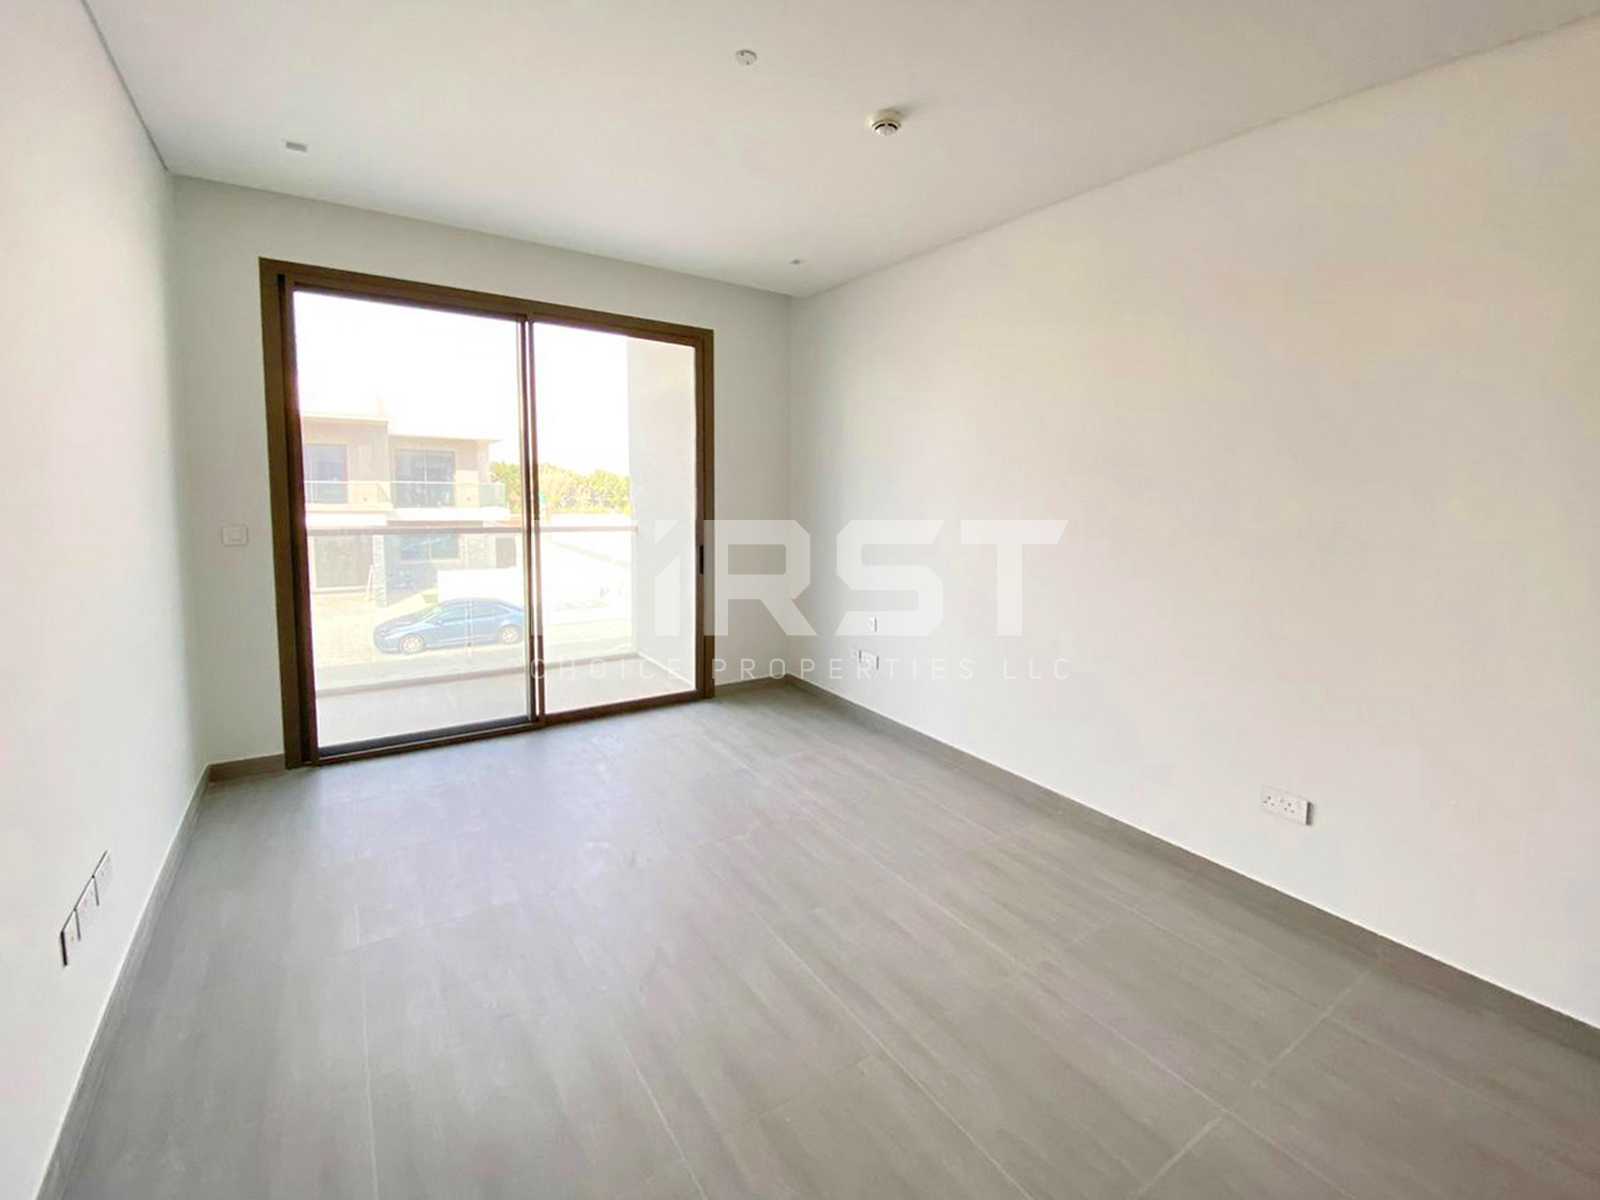 External Photo of 4 Bedroom Duplex Type 4Y in Yas Acres Yas Island AUH UAE (6).jpg